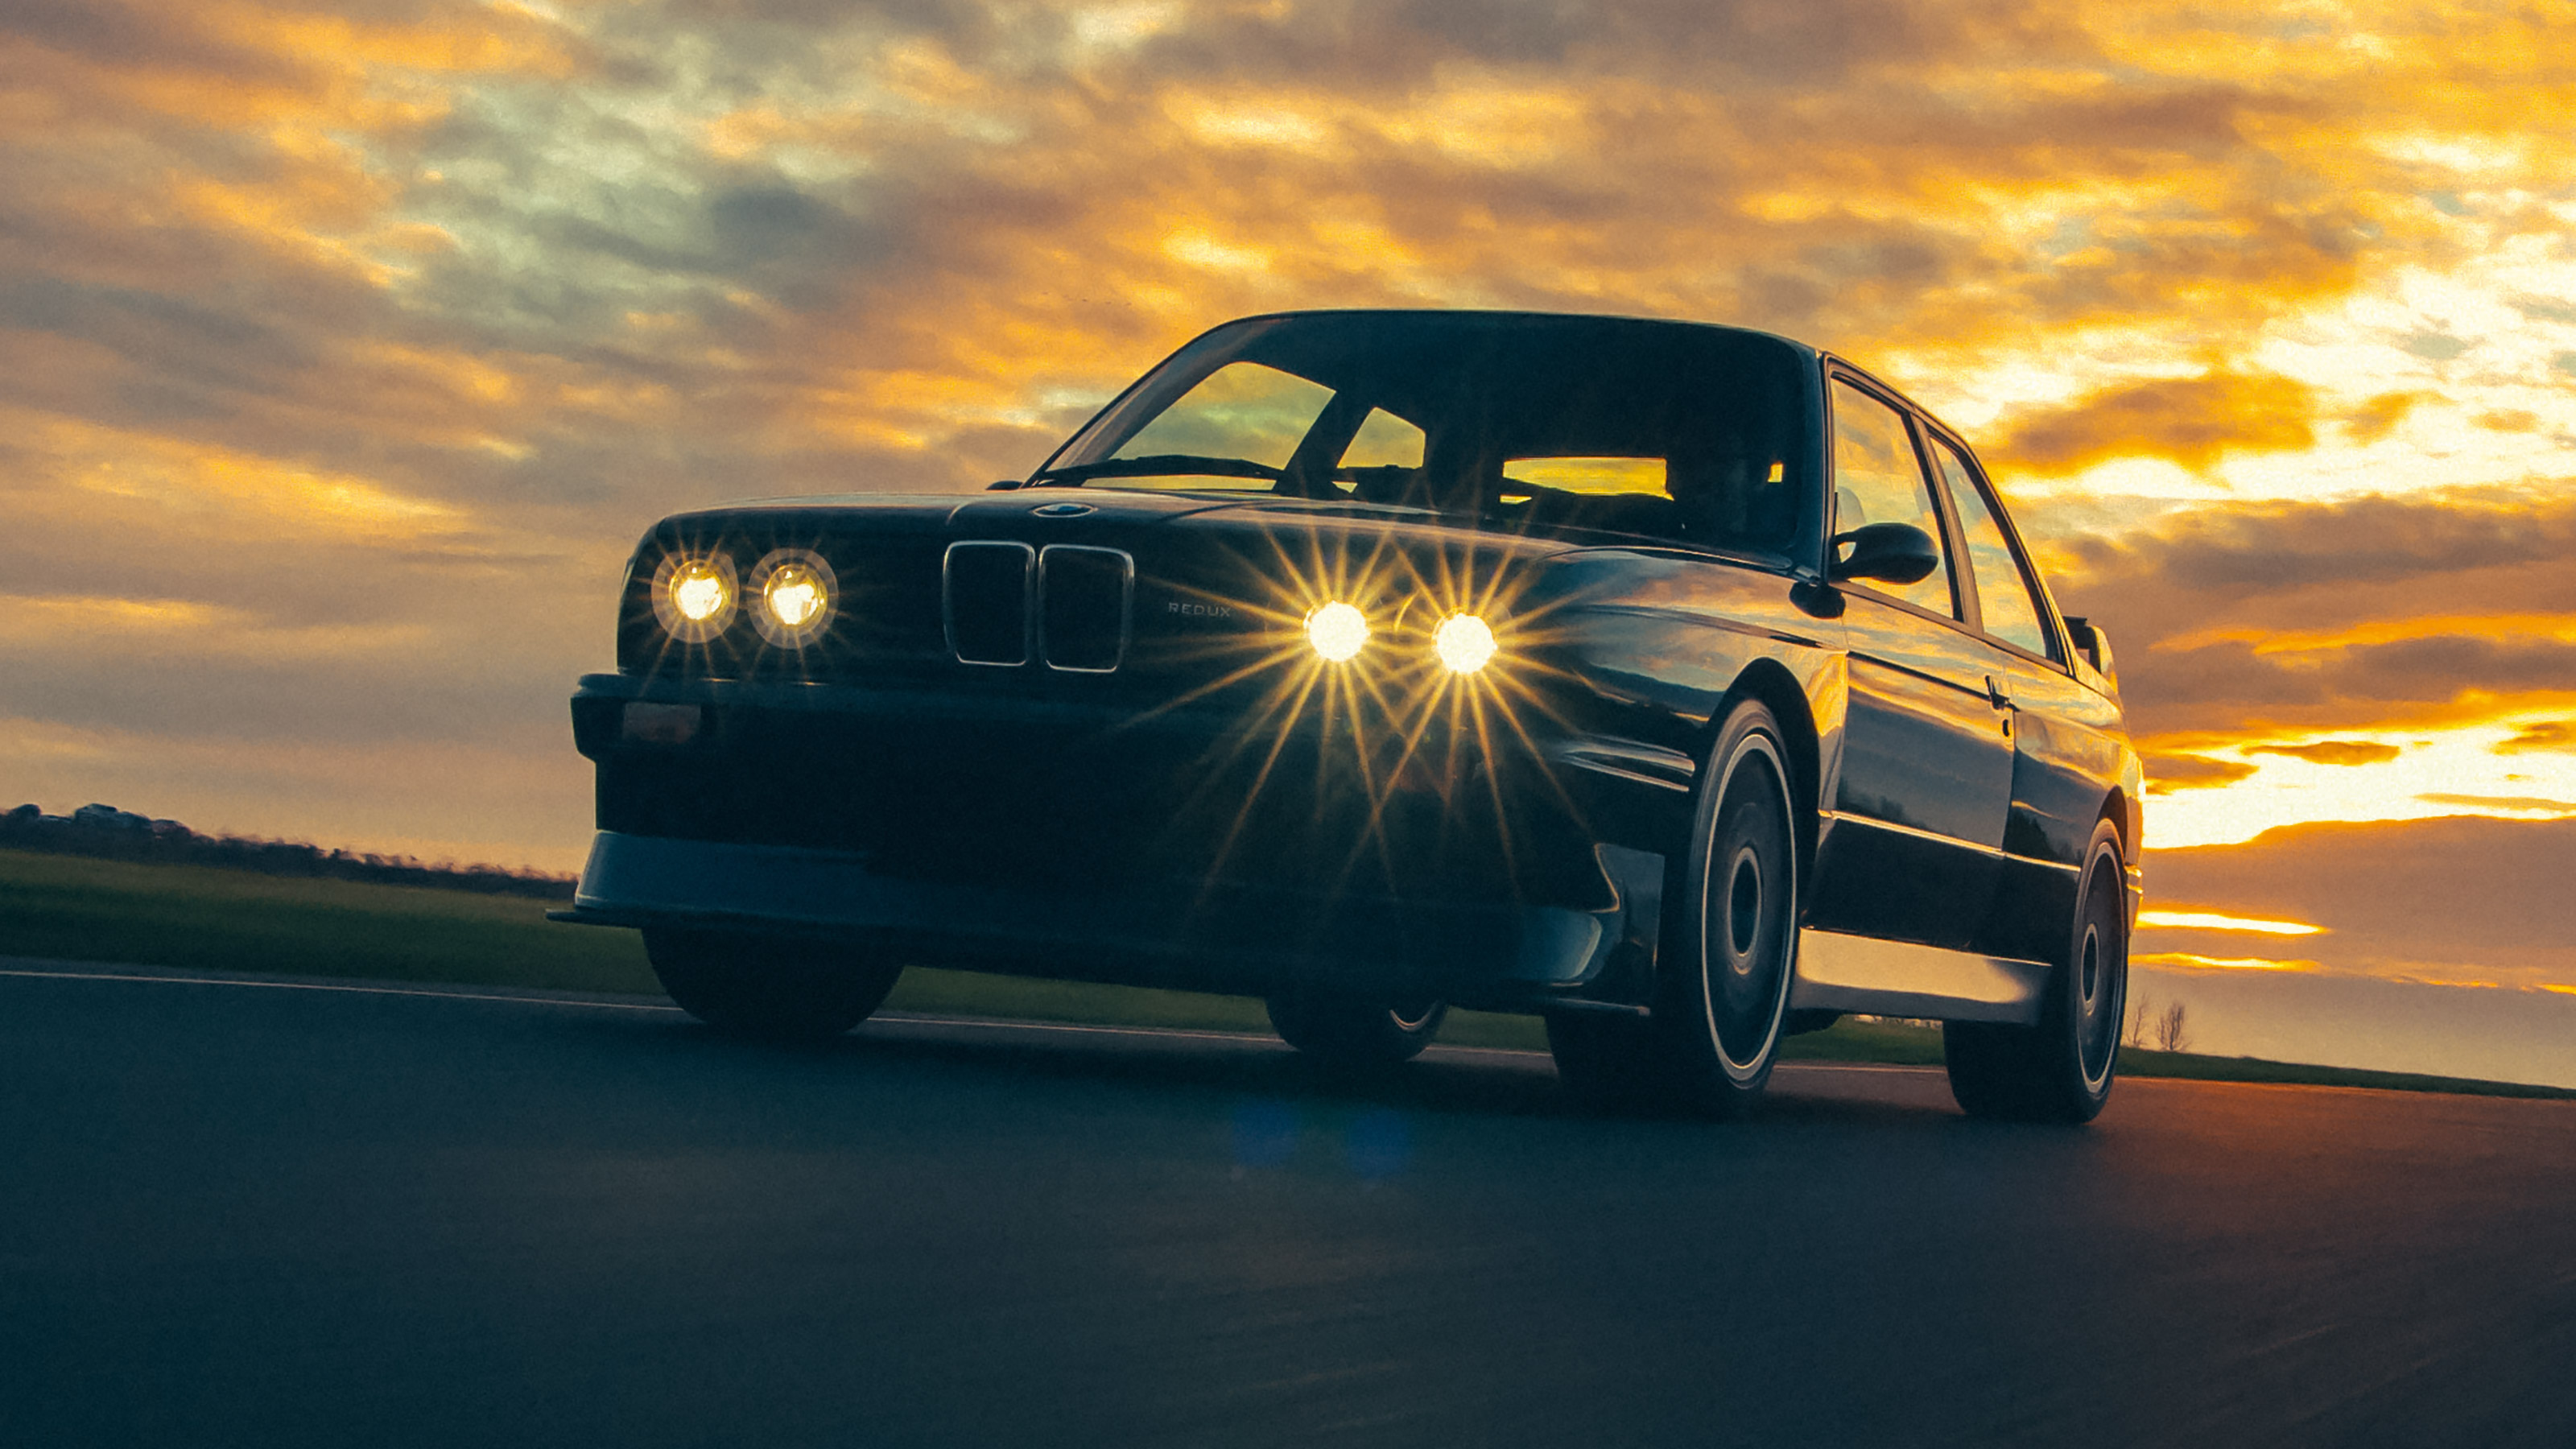 BMW E30 M3 Gets Manhart Makeover With 405-HP Turbo I6 Engine